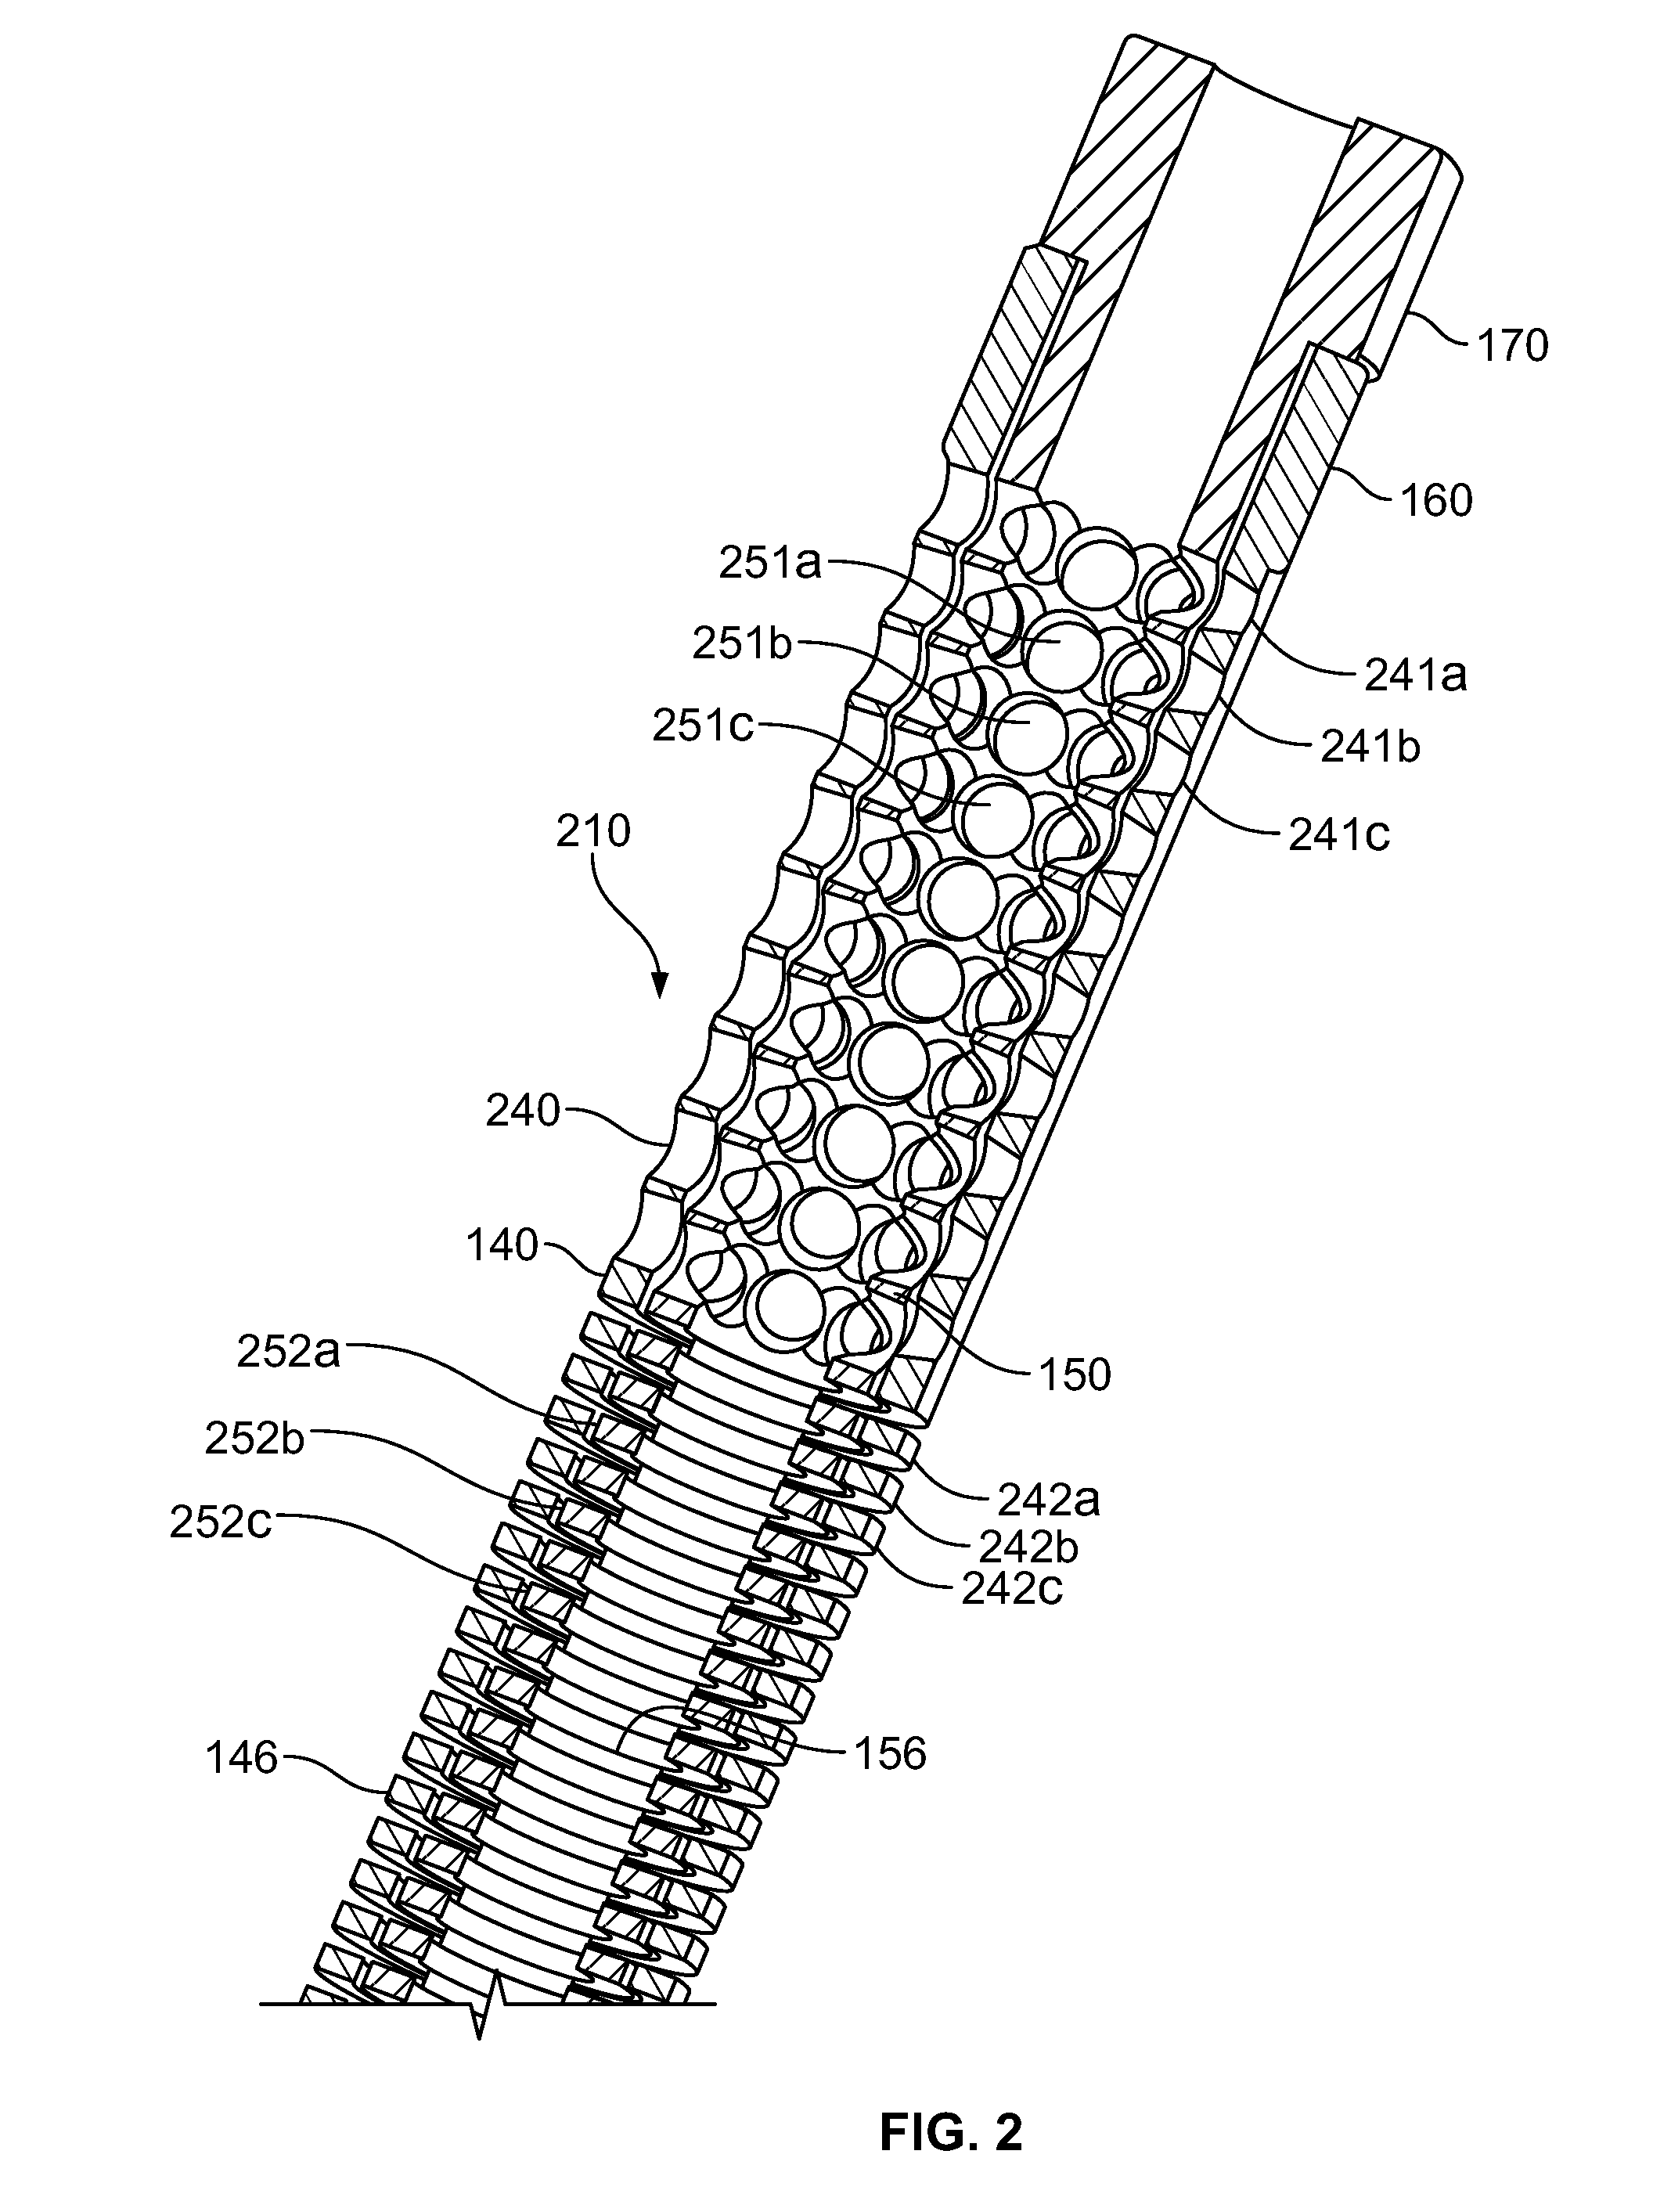 Rotary-rigid orthopaedic rod